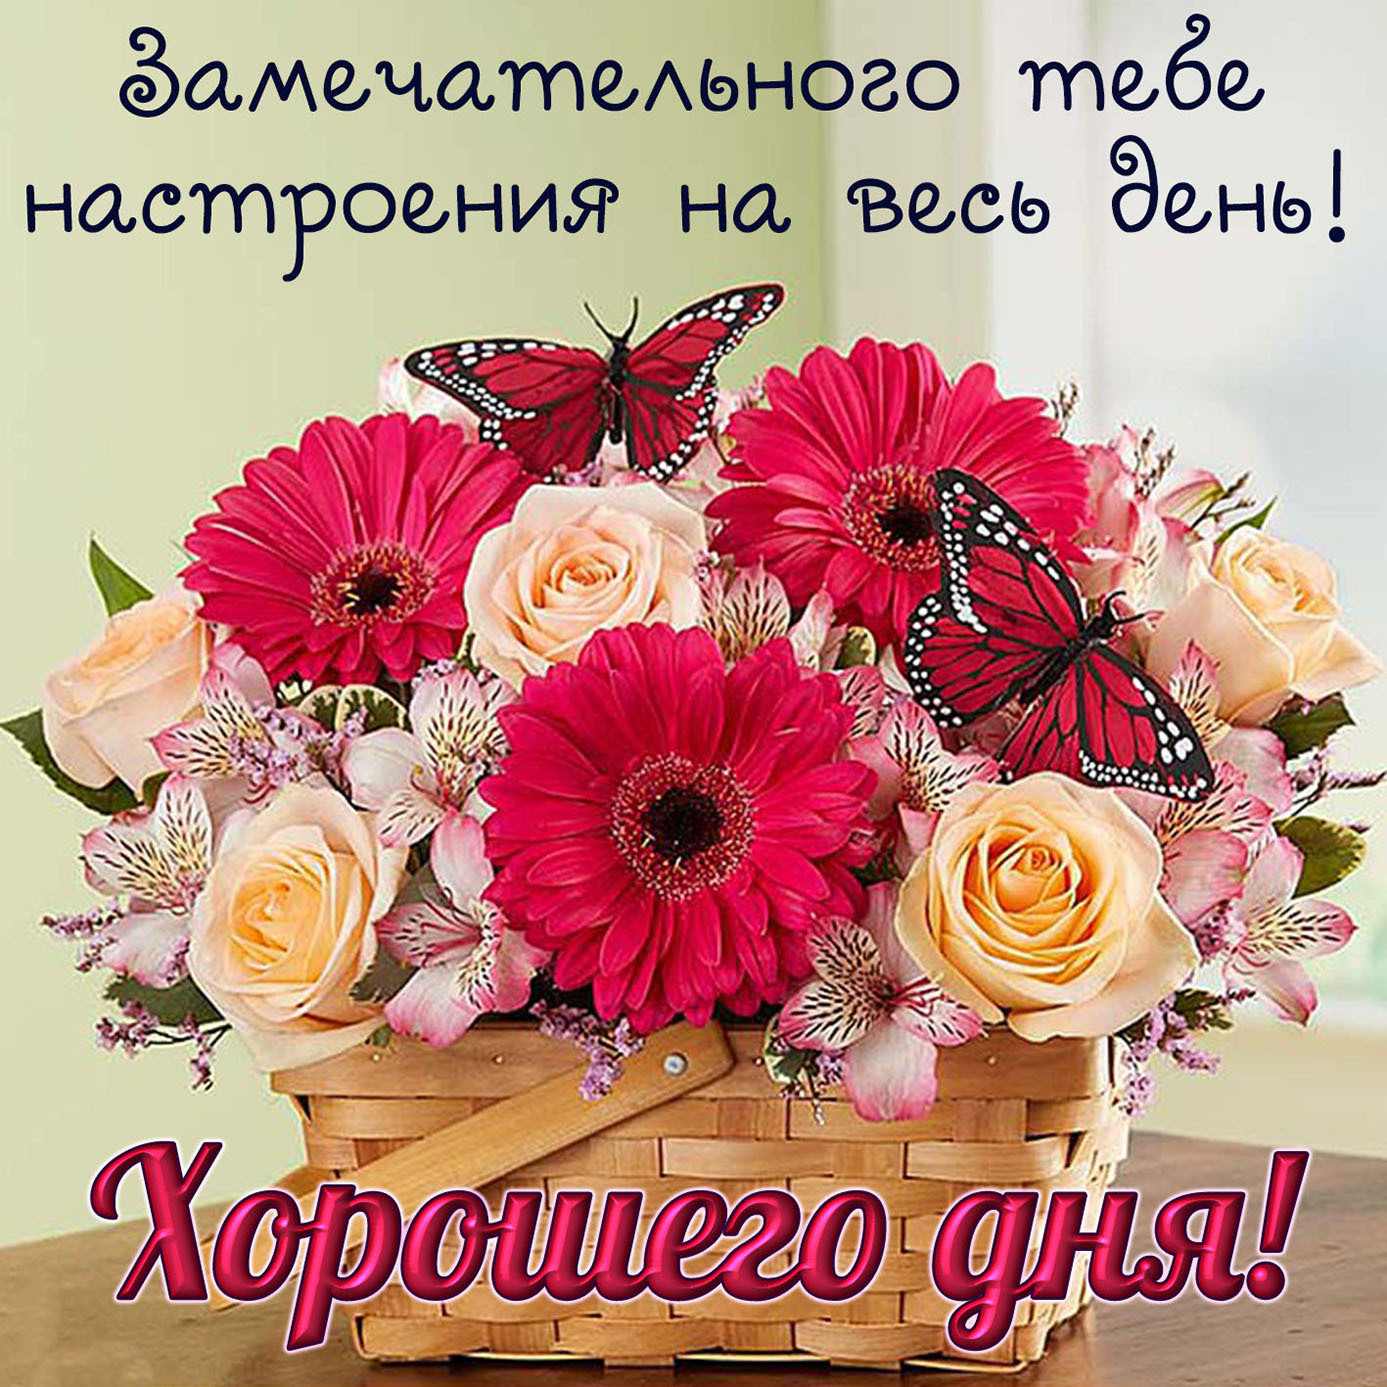 Спасибо замечательного дня. Хорошего дня и отличного настроения. Цветы с пожеланиями хорошего дня. Поздравления с хорошим настроением. Поздравления с добрым днем и с хорошим настроением.